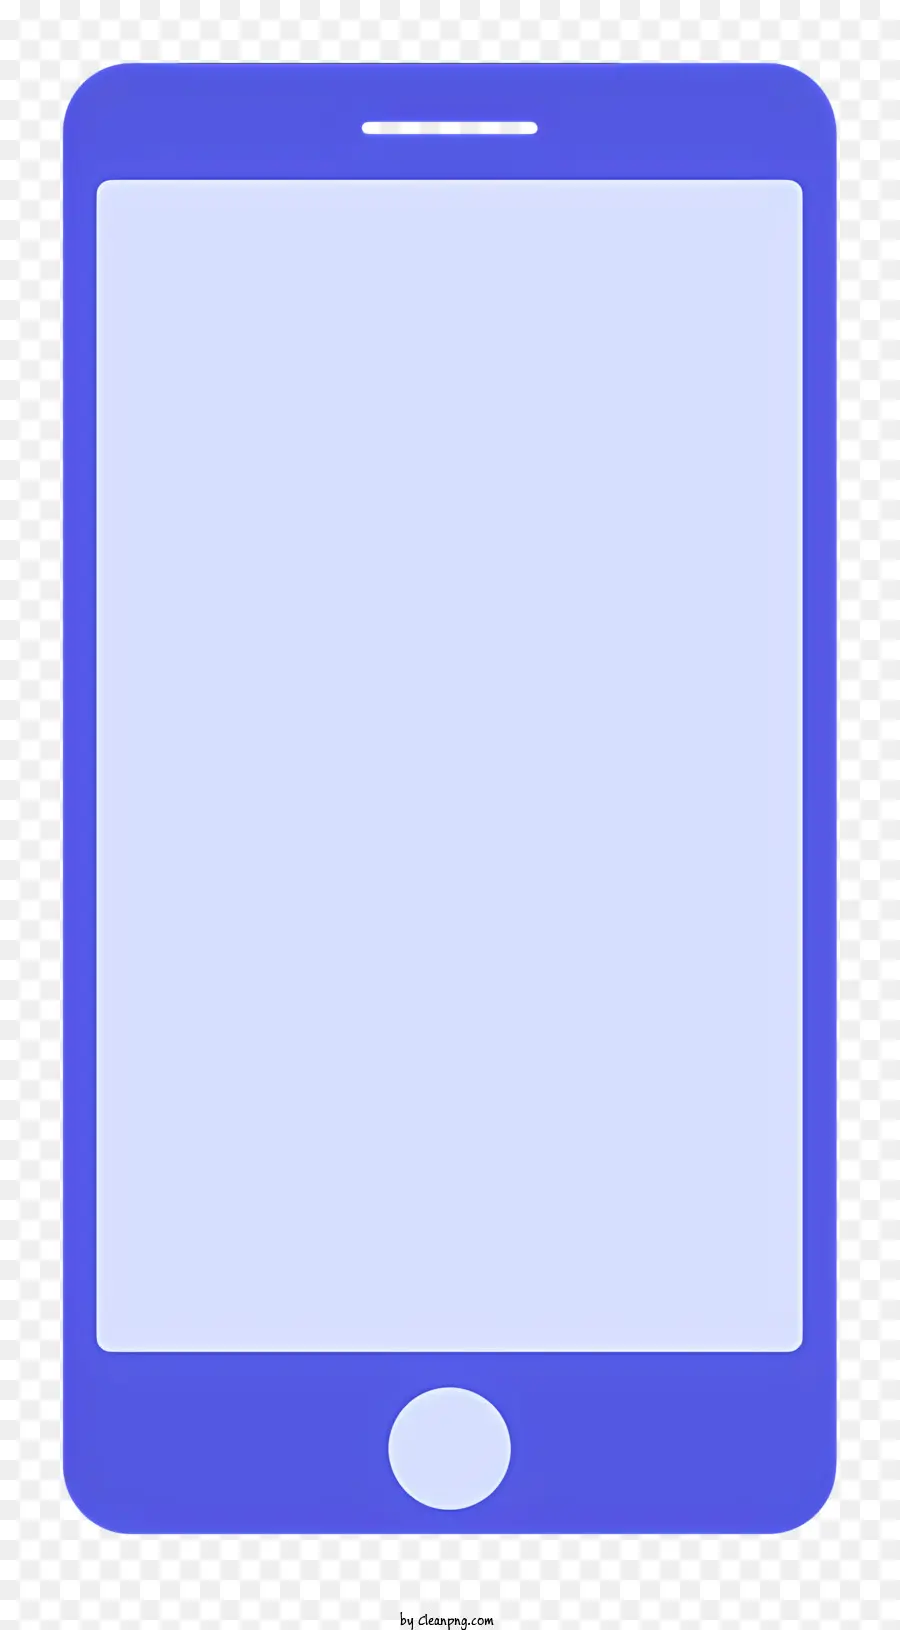 Smartphone blu Schermata vuota Schermata piatta bordo a forma rettangolare attorno allo schermo - Uno smartphone blu vuoto con bordi visibili